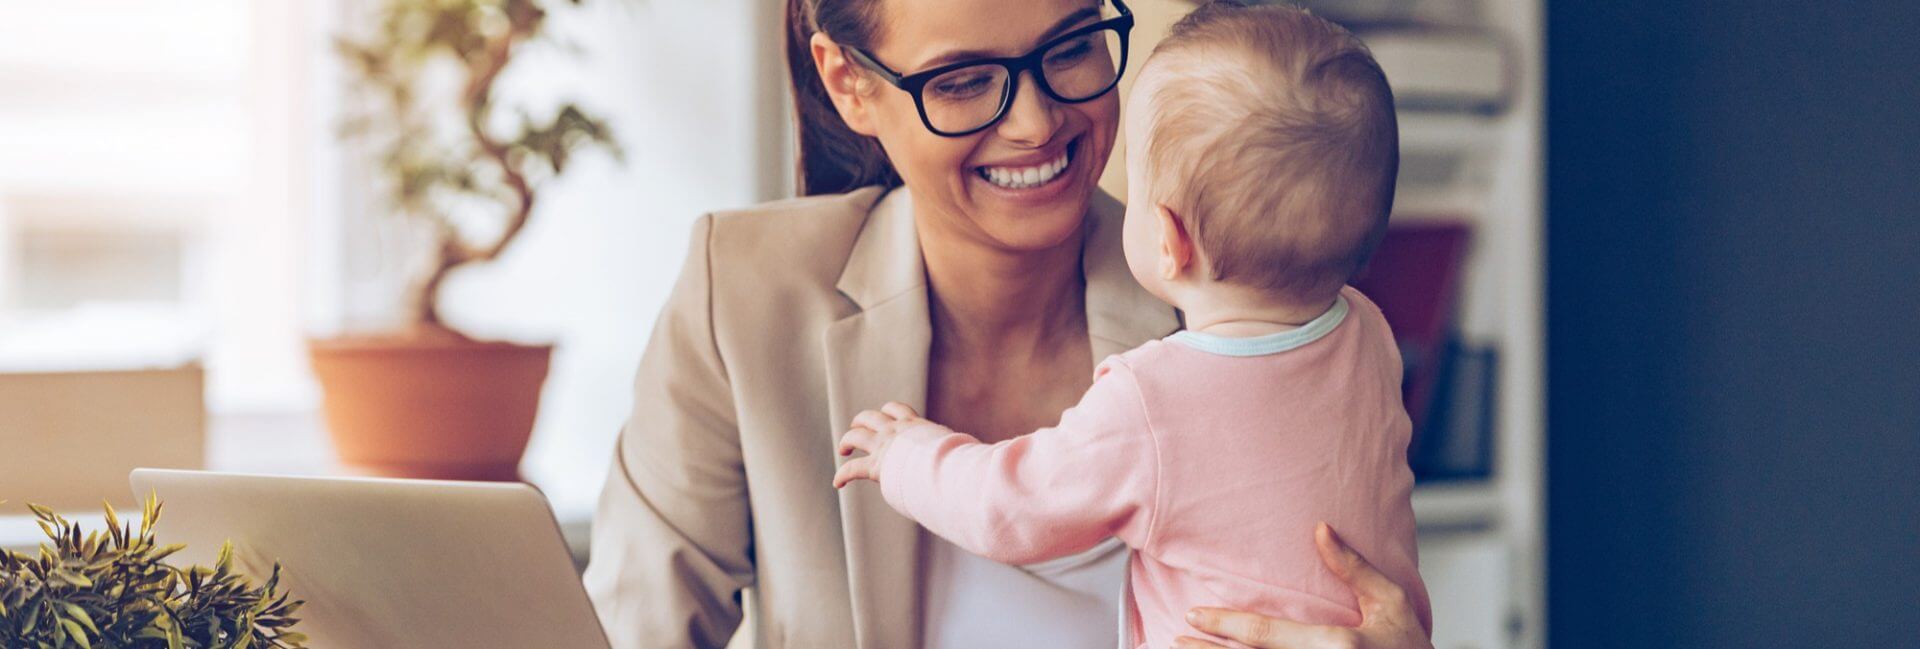 Como abrir o próprio negócio sendo uma mãe empreendedora?